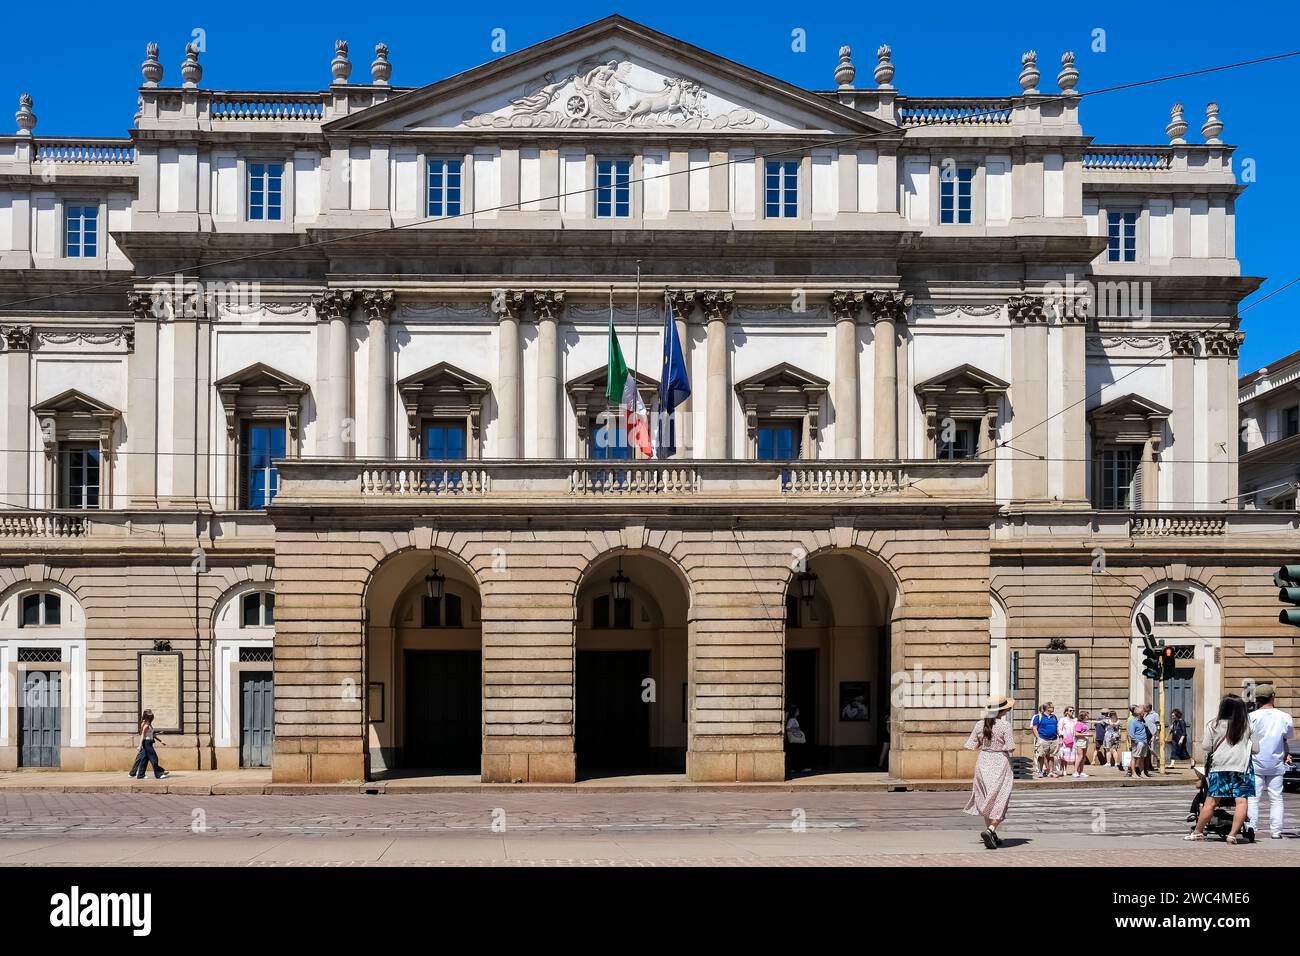 Extérieur de la Scala, un opéra renommé de Milan, situé sur la Piazza della Scala. Banque D'Images